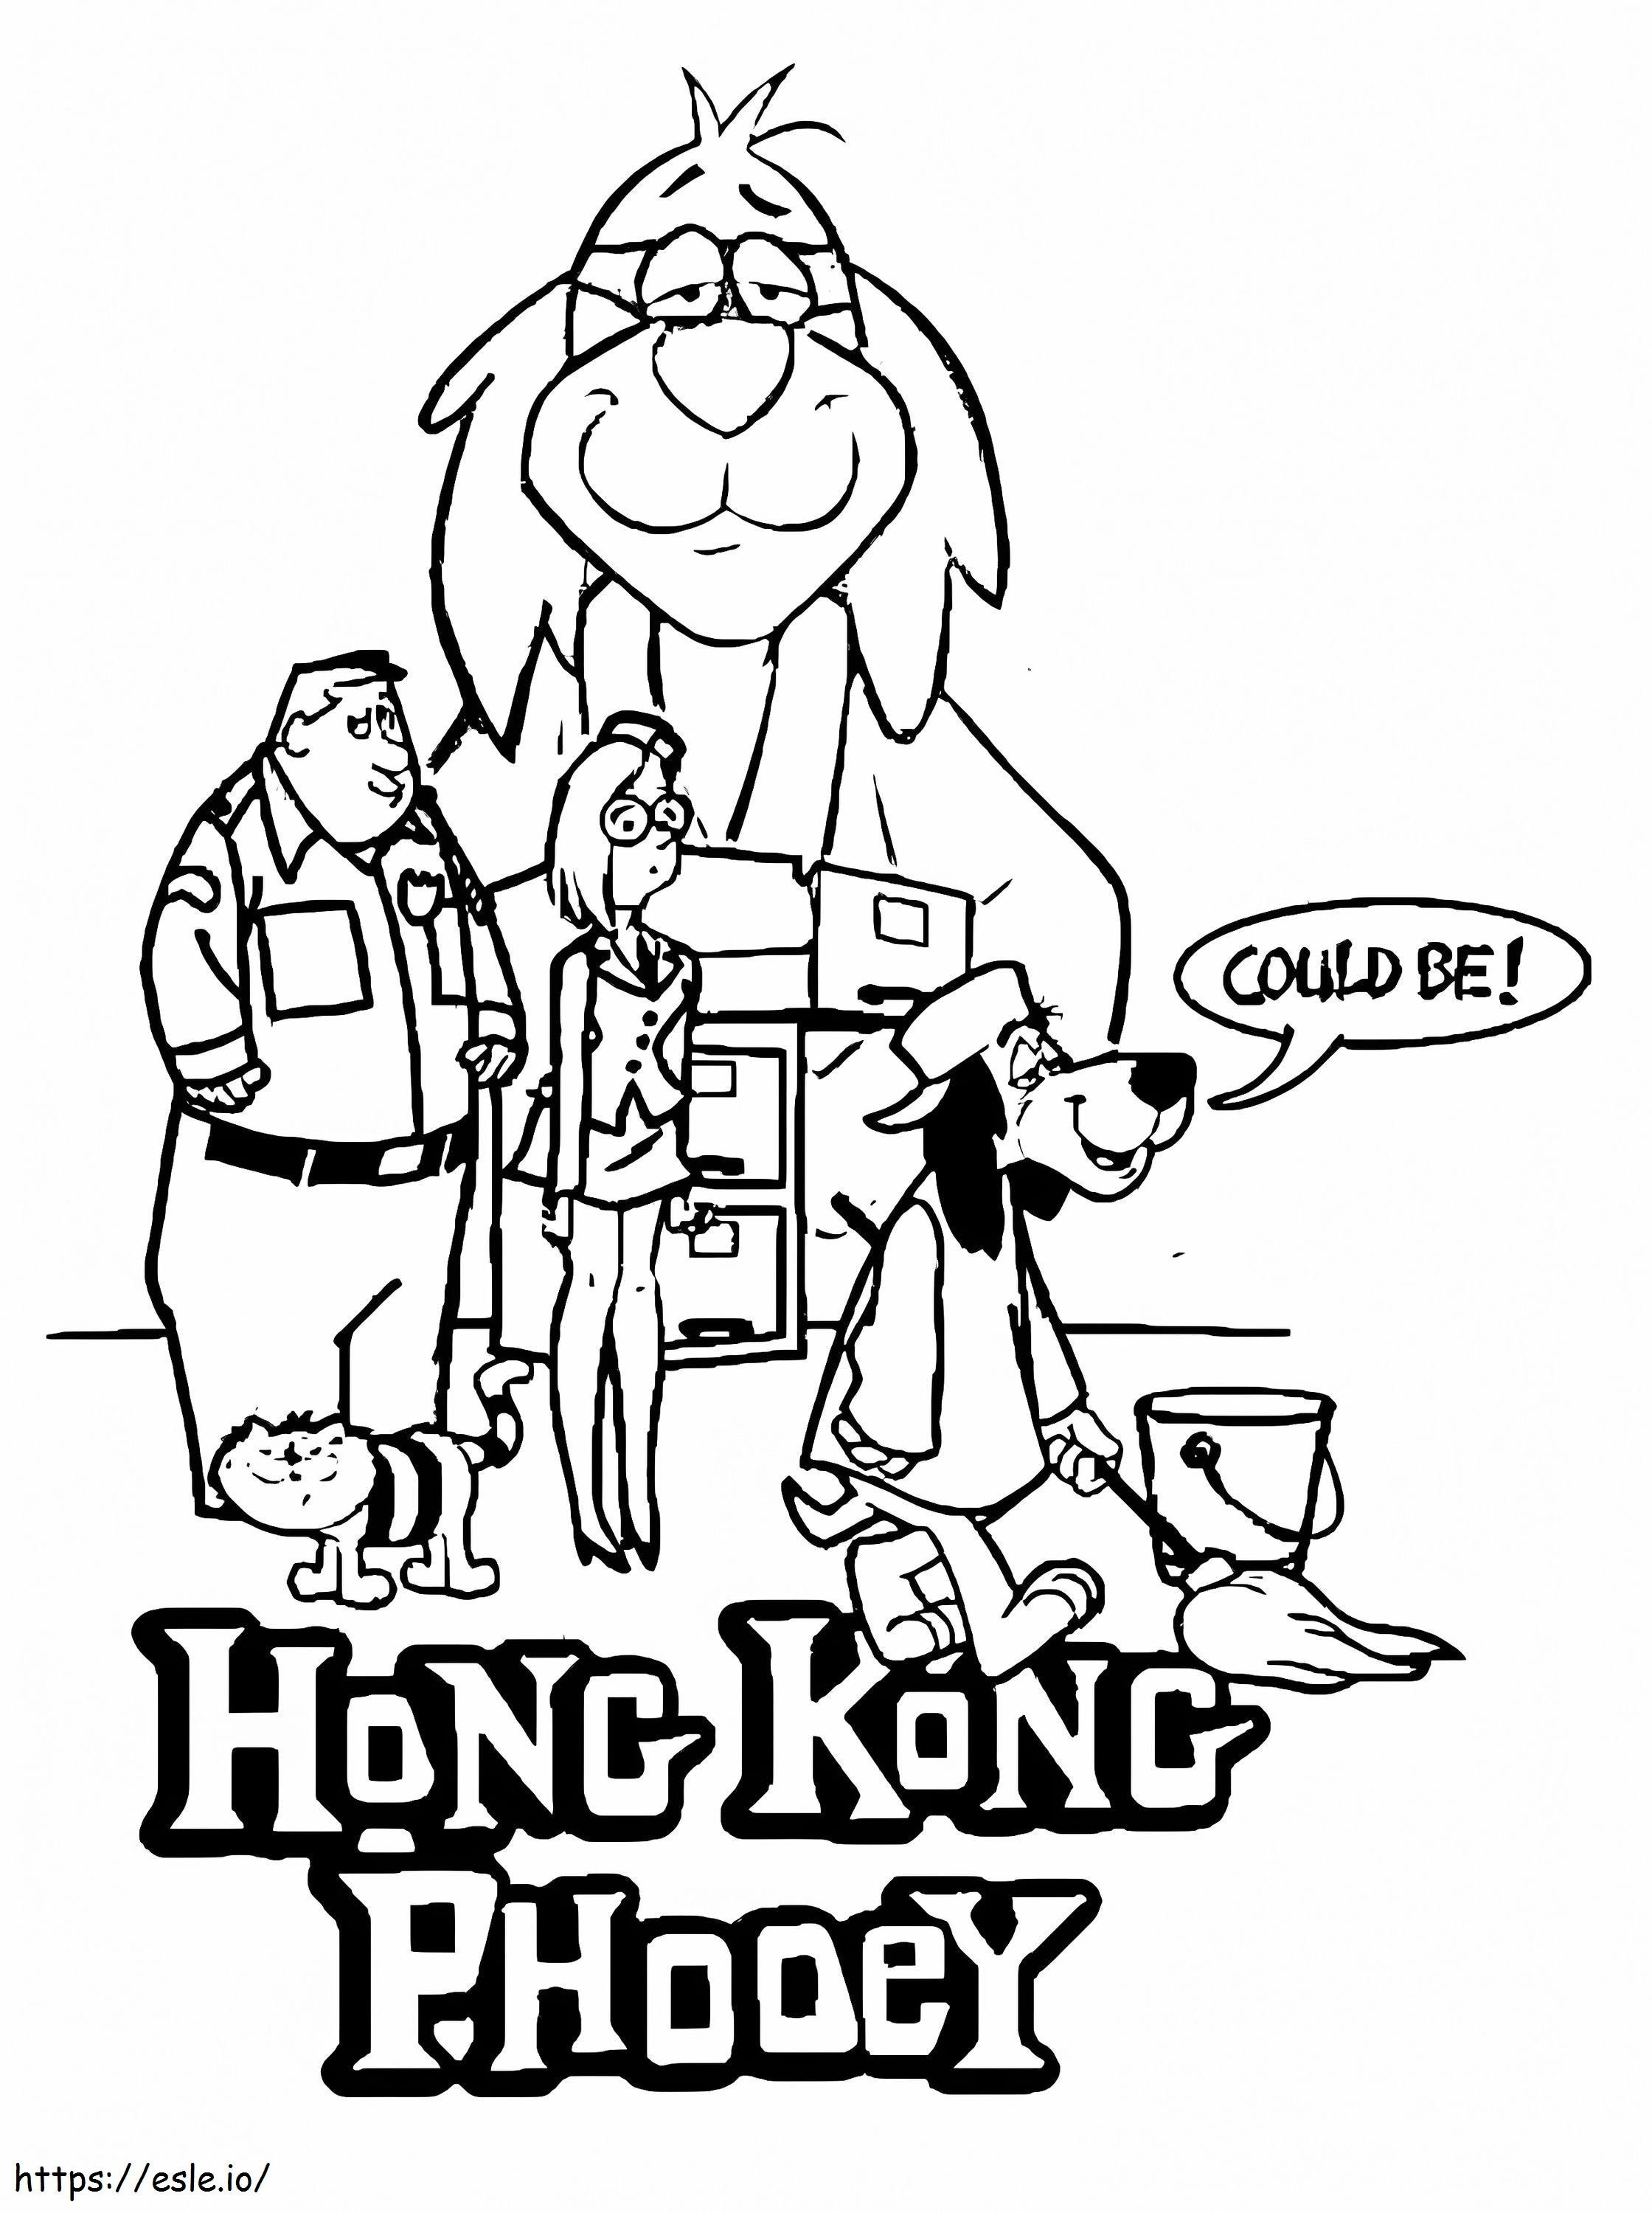 Hong Kong Phooey Characters coloring page